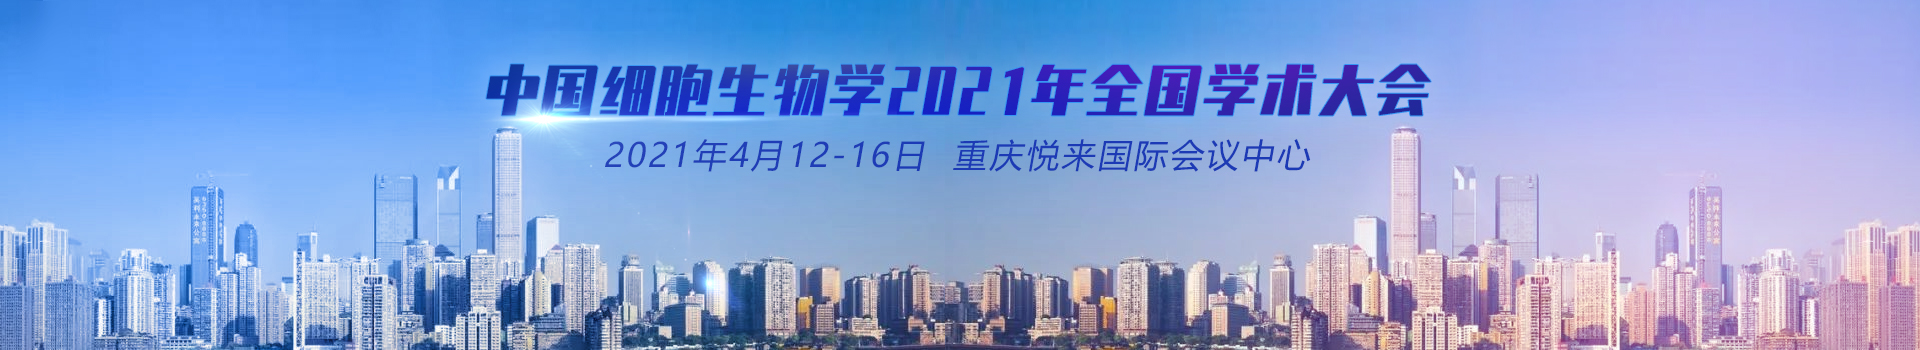 中国细胞生物学学会2021年全国学术大会